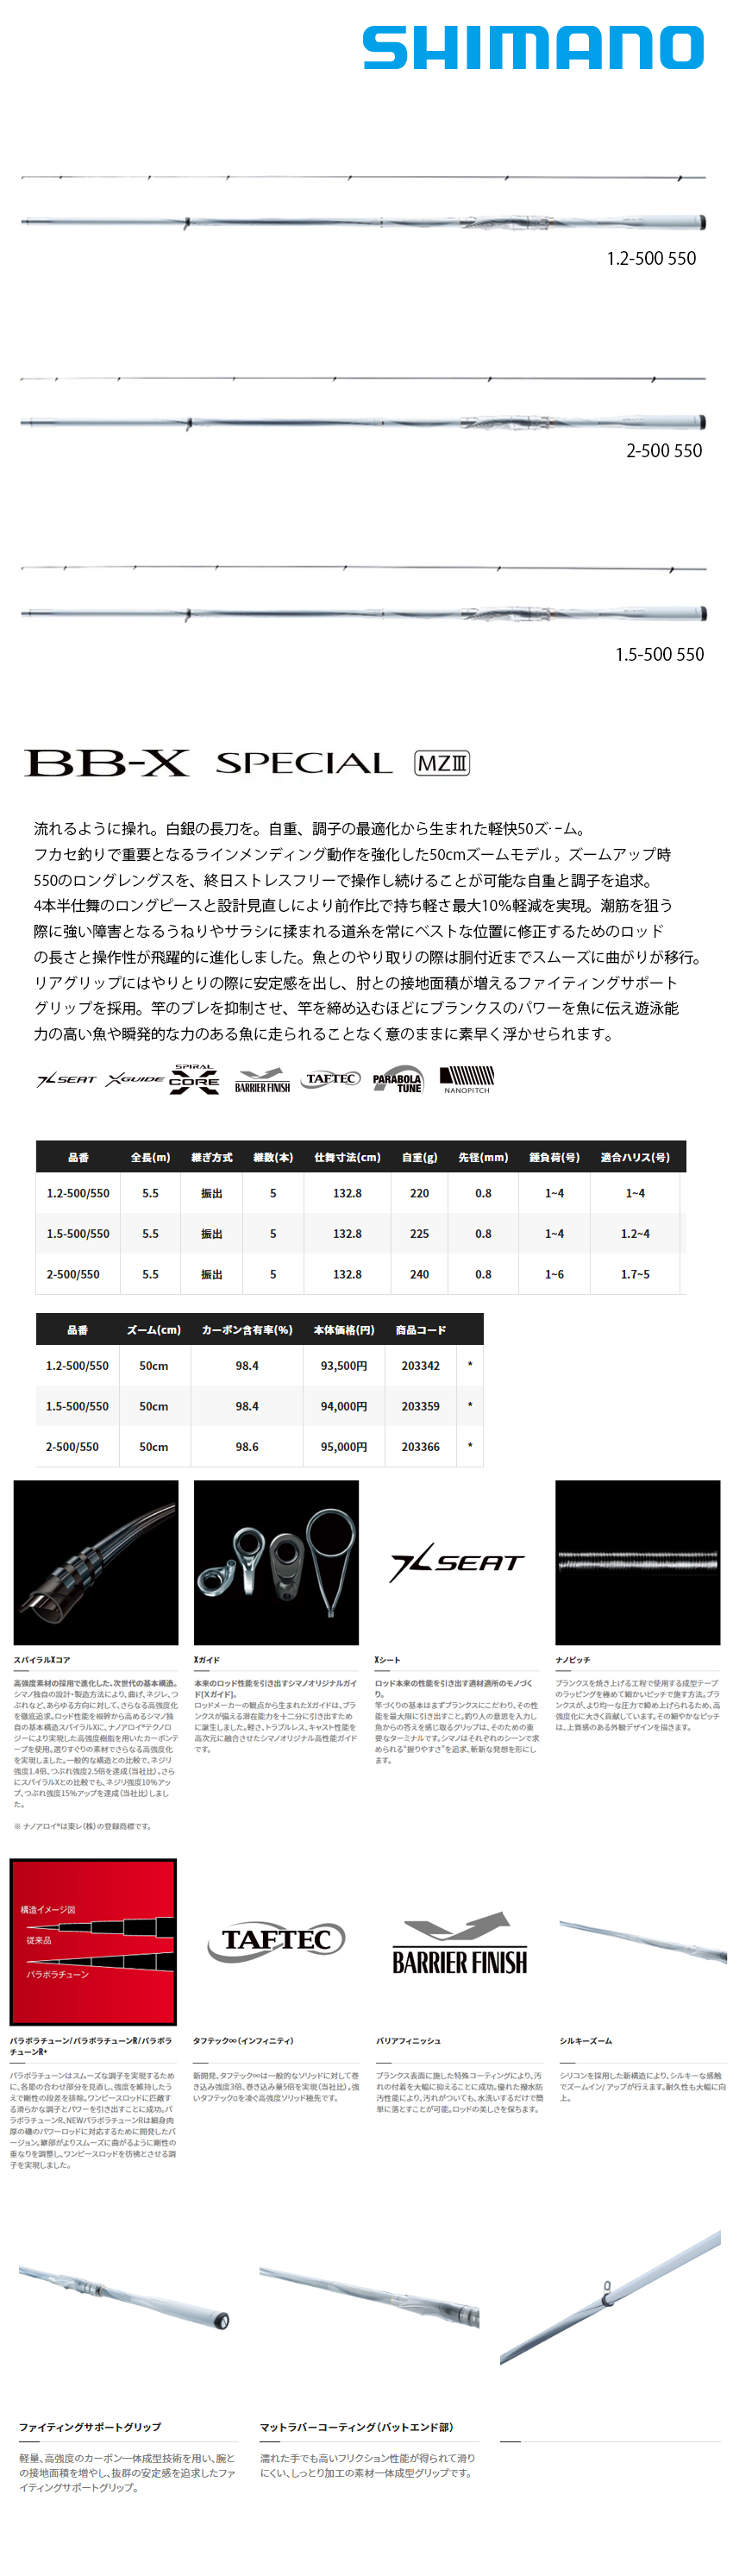 BBX MZ III 1.5 500-550 保証書無し ロッド フィッシング スポーツ・レジャー セール値引き品